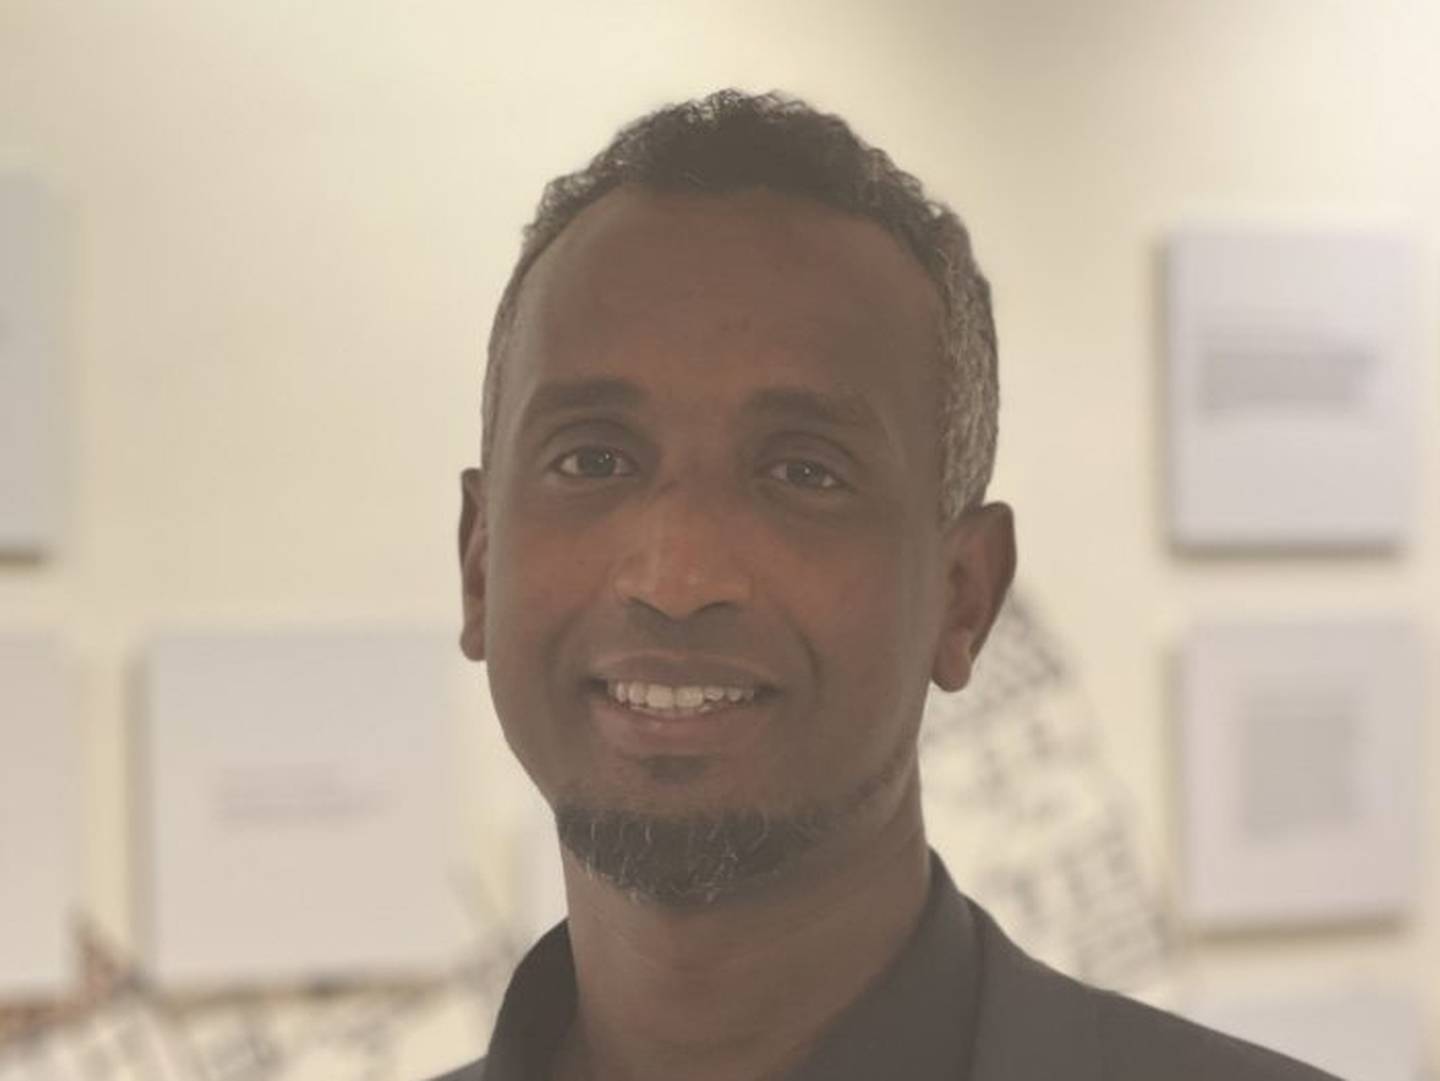 Zakaria Osman er opprinnelig fra Somalia, men flyttet til Stavanger i 2015 og har siden da jobbet som bussjåfør. Han er én av Stavanger Høyres nye medlemmer.